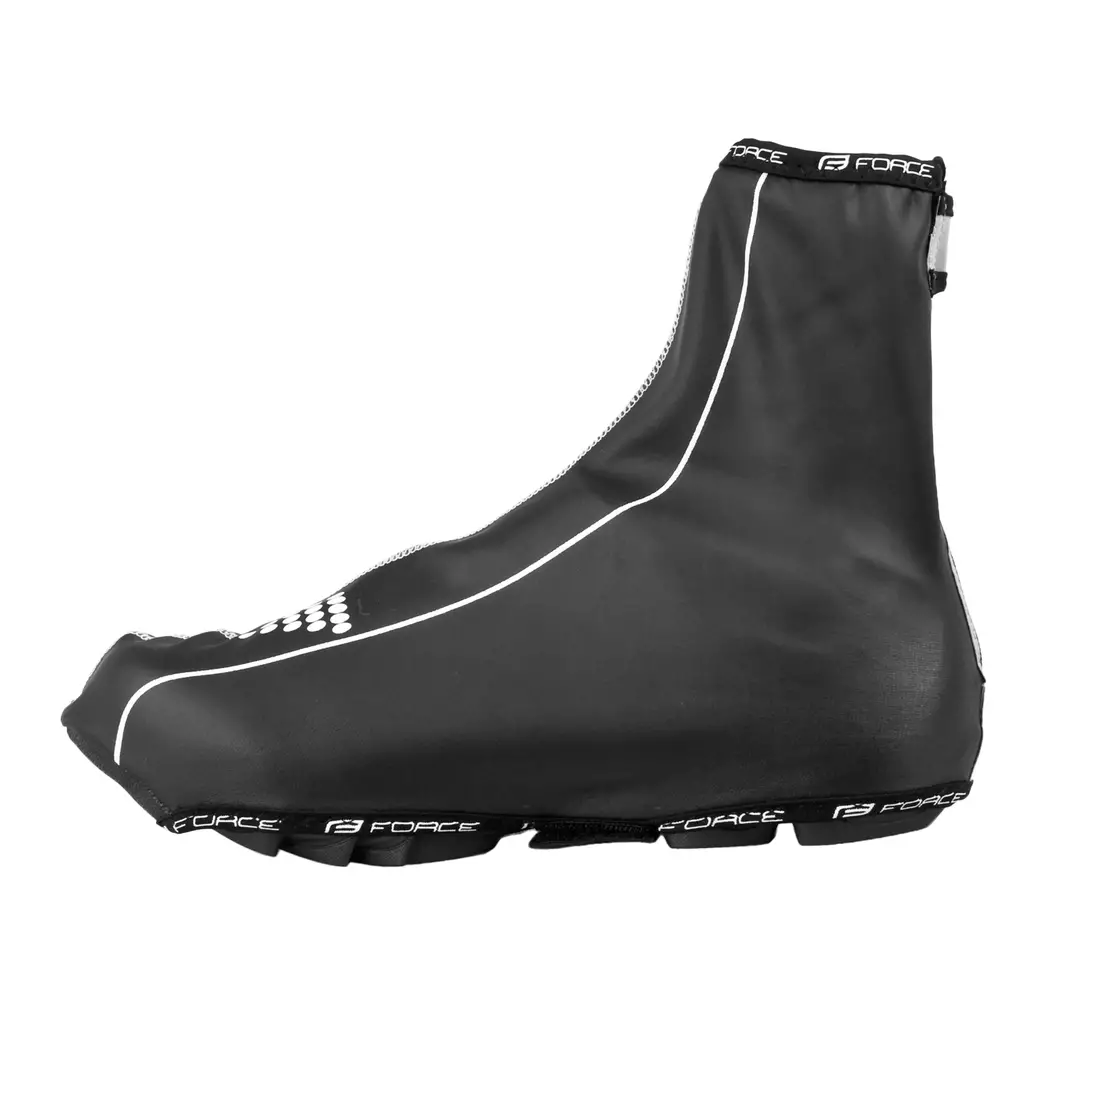 FORCE PU DRY - 90600 - MTB shoe covers, rainproof